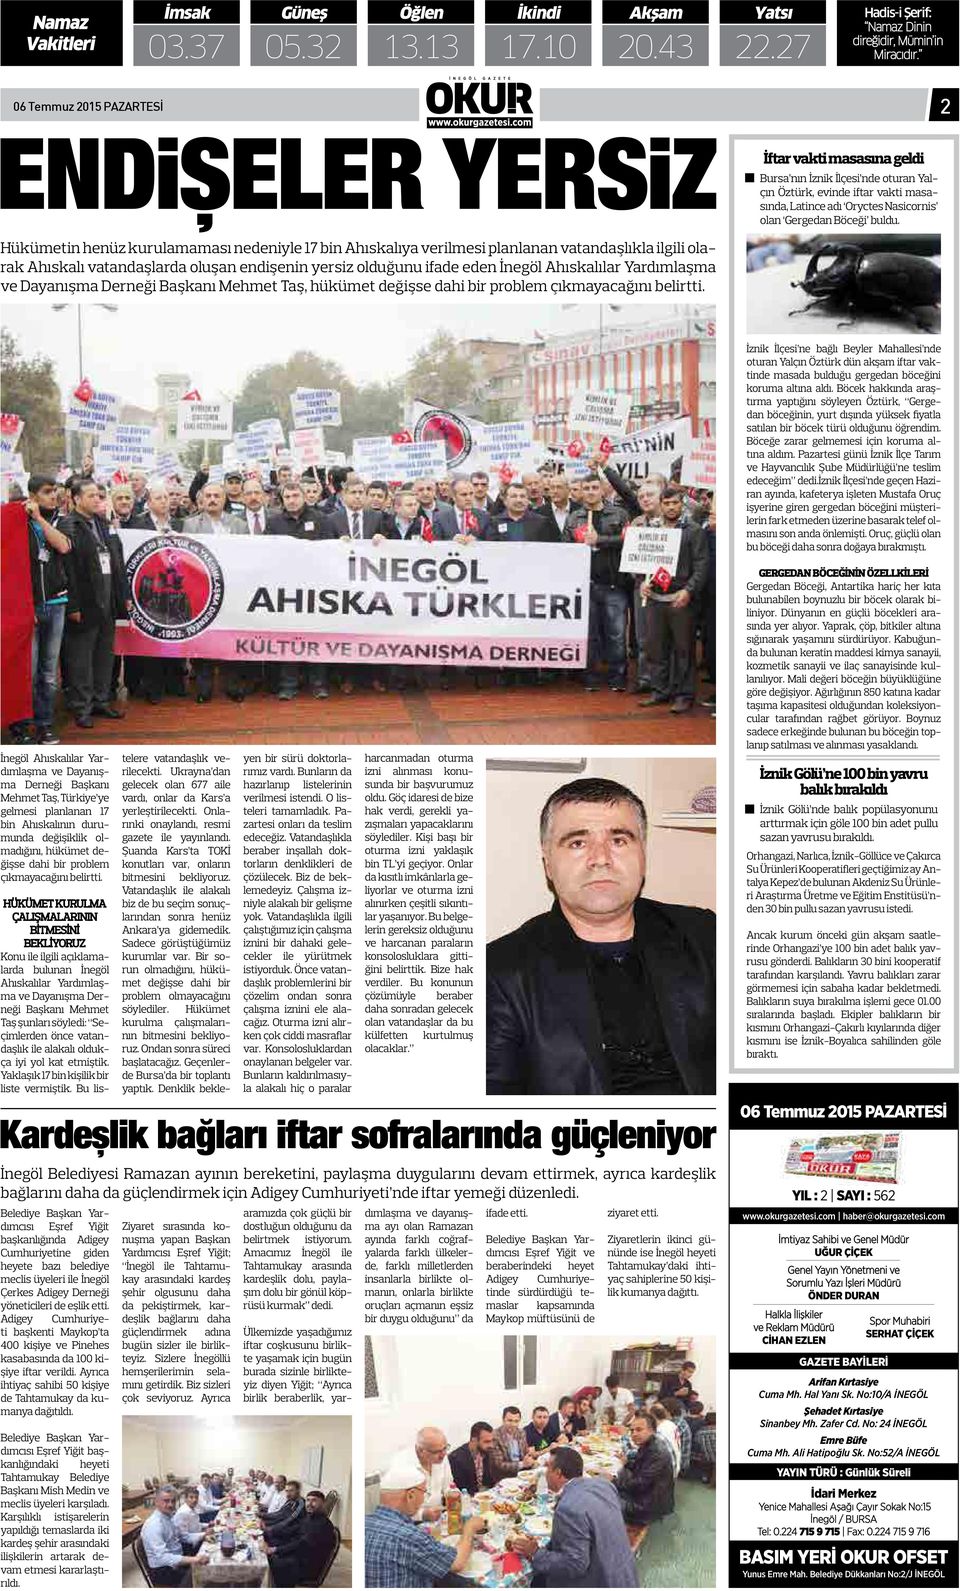 İnegöl Ahıskalılar Yardımlaşma ve Dayanışma Derneği Başkanı Mehmet Taş, hükümet değişse dahi bir problem çıkmayacağını belirtti.